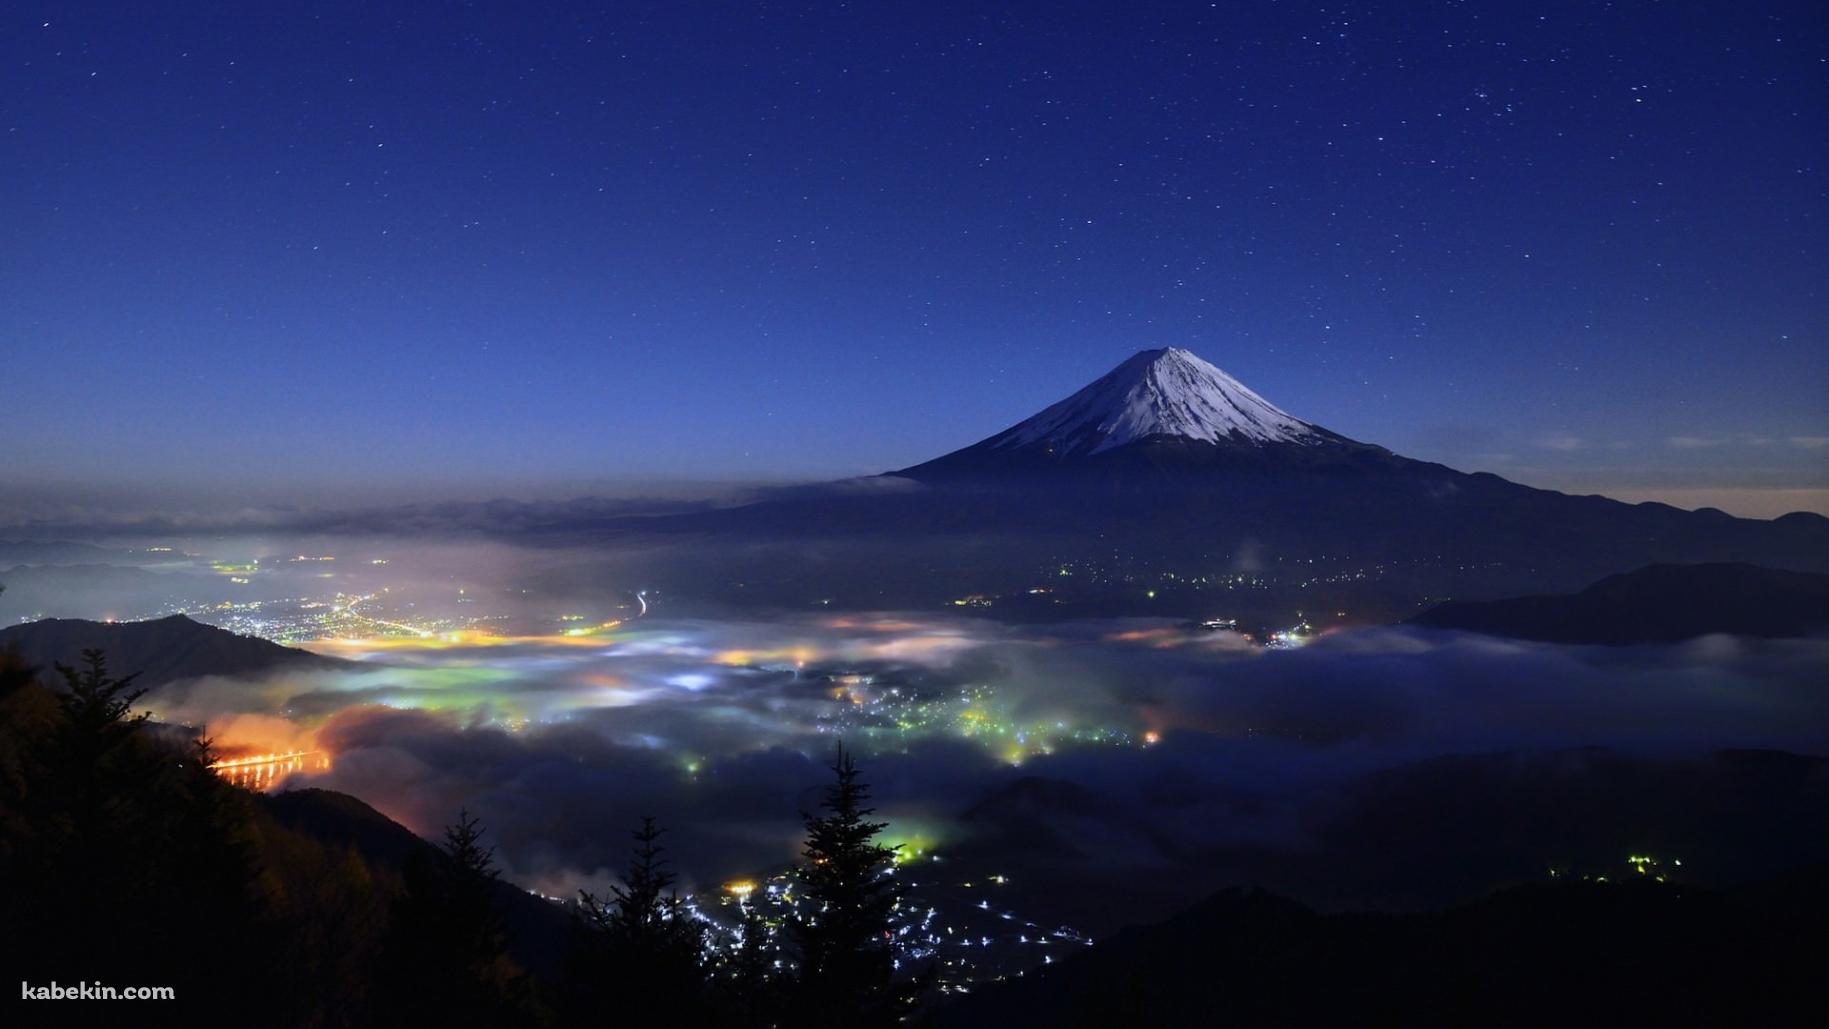 富士山と星空 日本 静岡県 山梨県の壁紙(1829px x 1029px) 高画質 PC・デスクトップ用